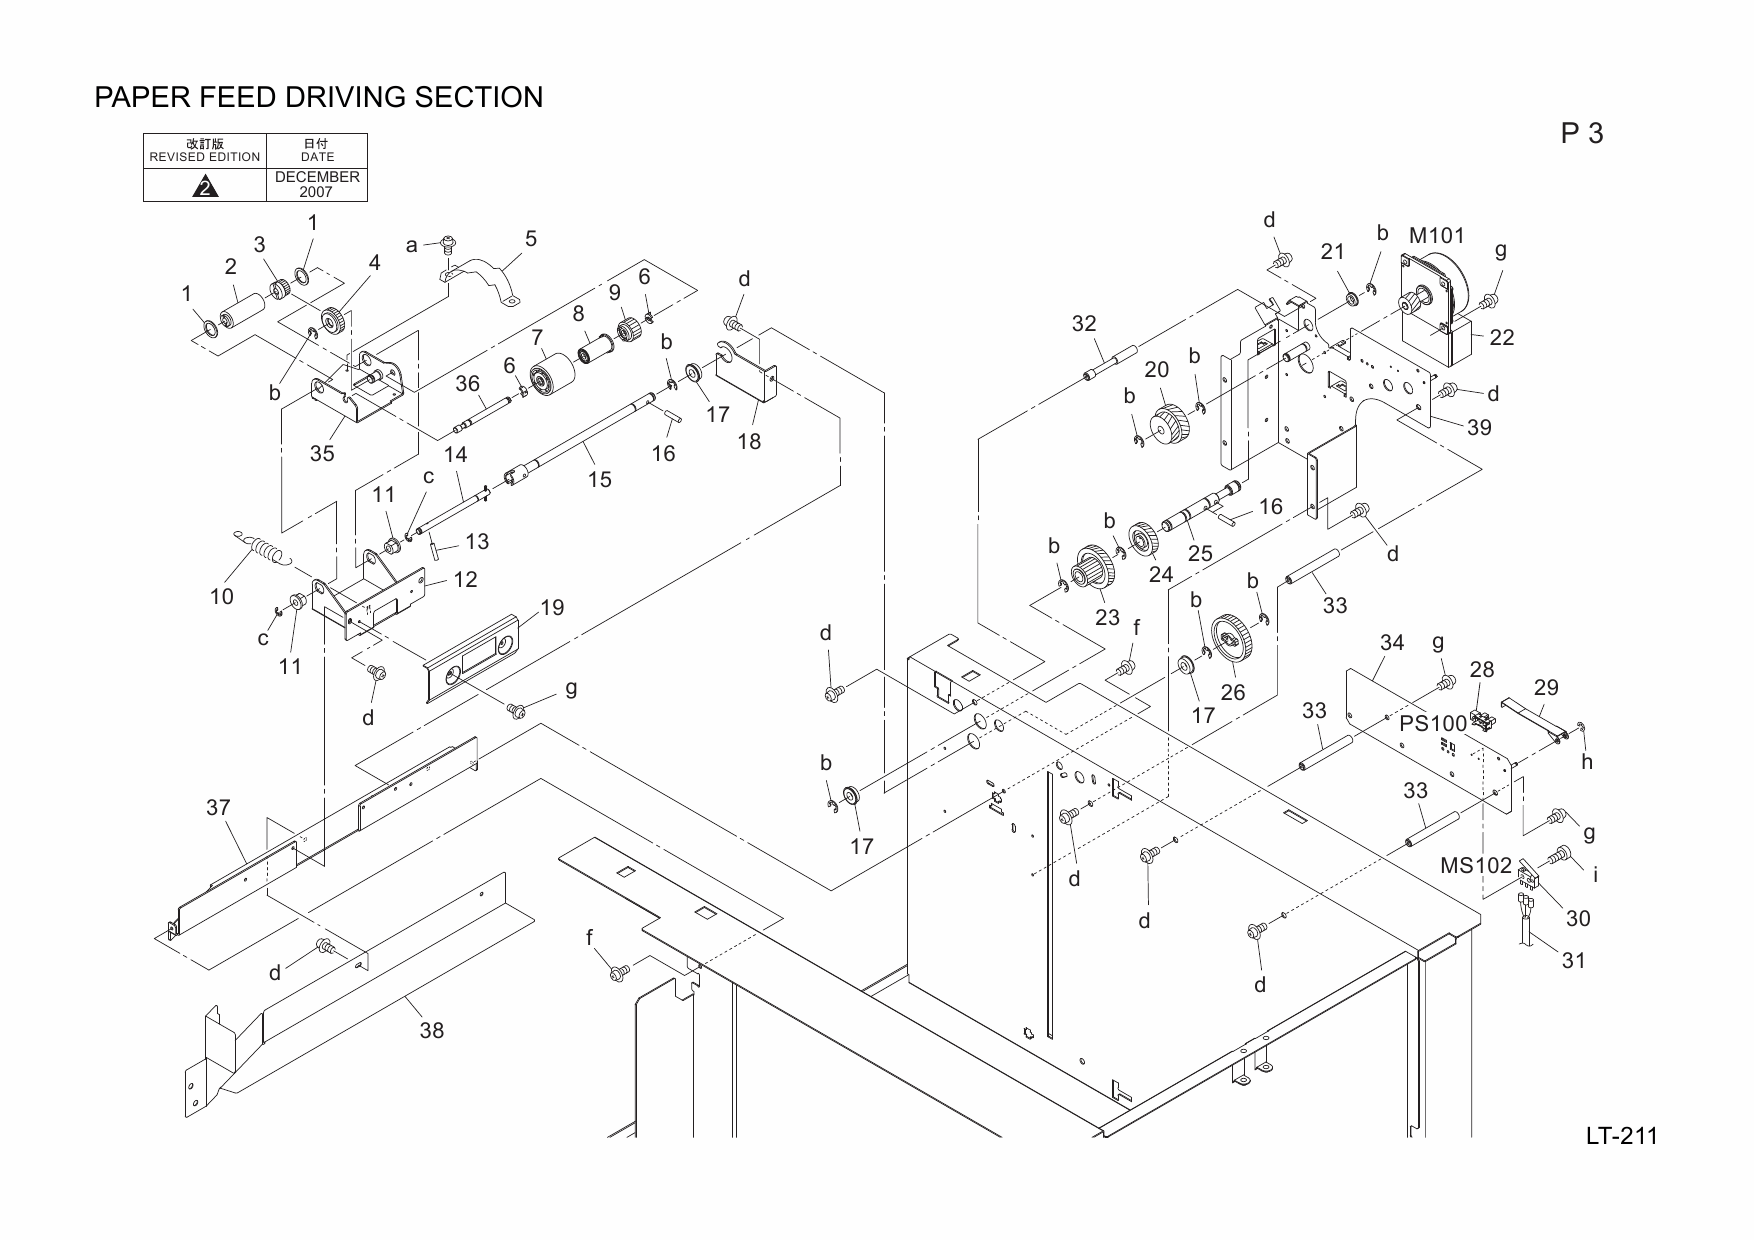 Konica-Minolta Options LT-211 20AA Parts Manual-2